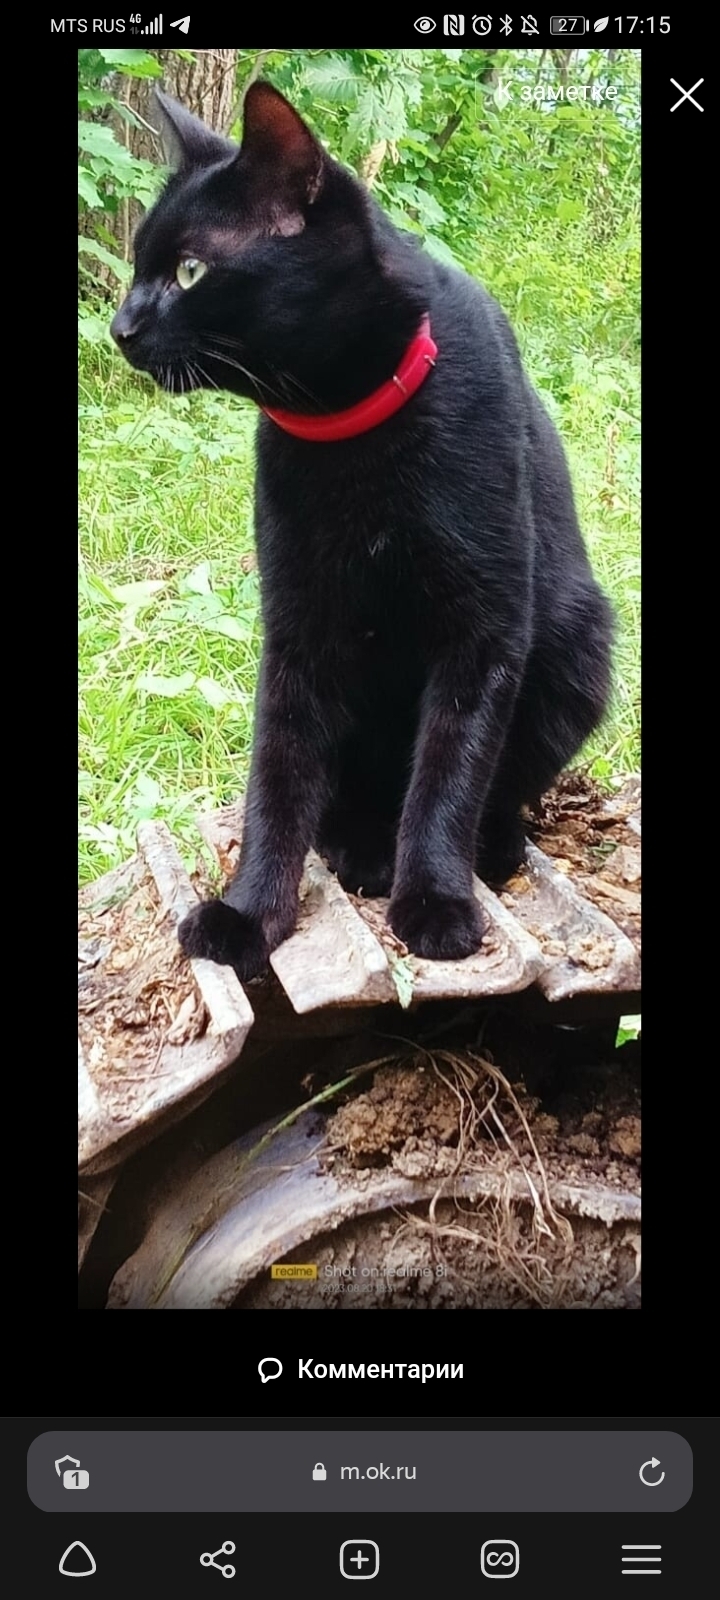 Пропала кошка Семён, черный окрас, 1 год. Найденная информация: 8 (924) 521-22-54. Вознаграждение 3000 руб. Адрес: 1-я Дачная улица, 26, Владивосток.